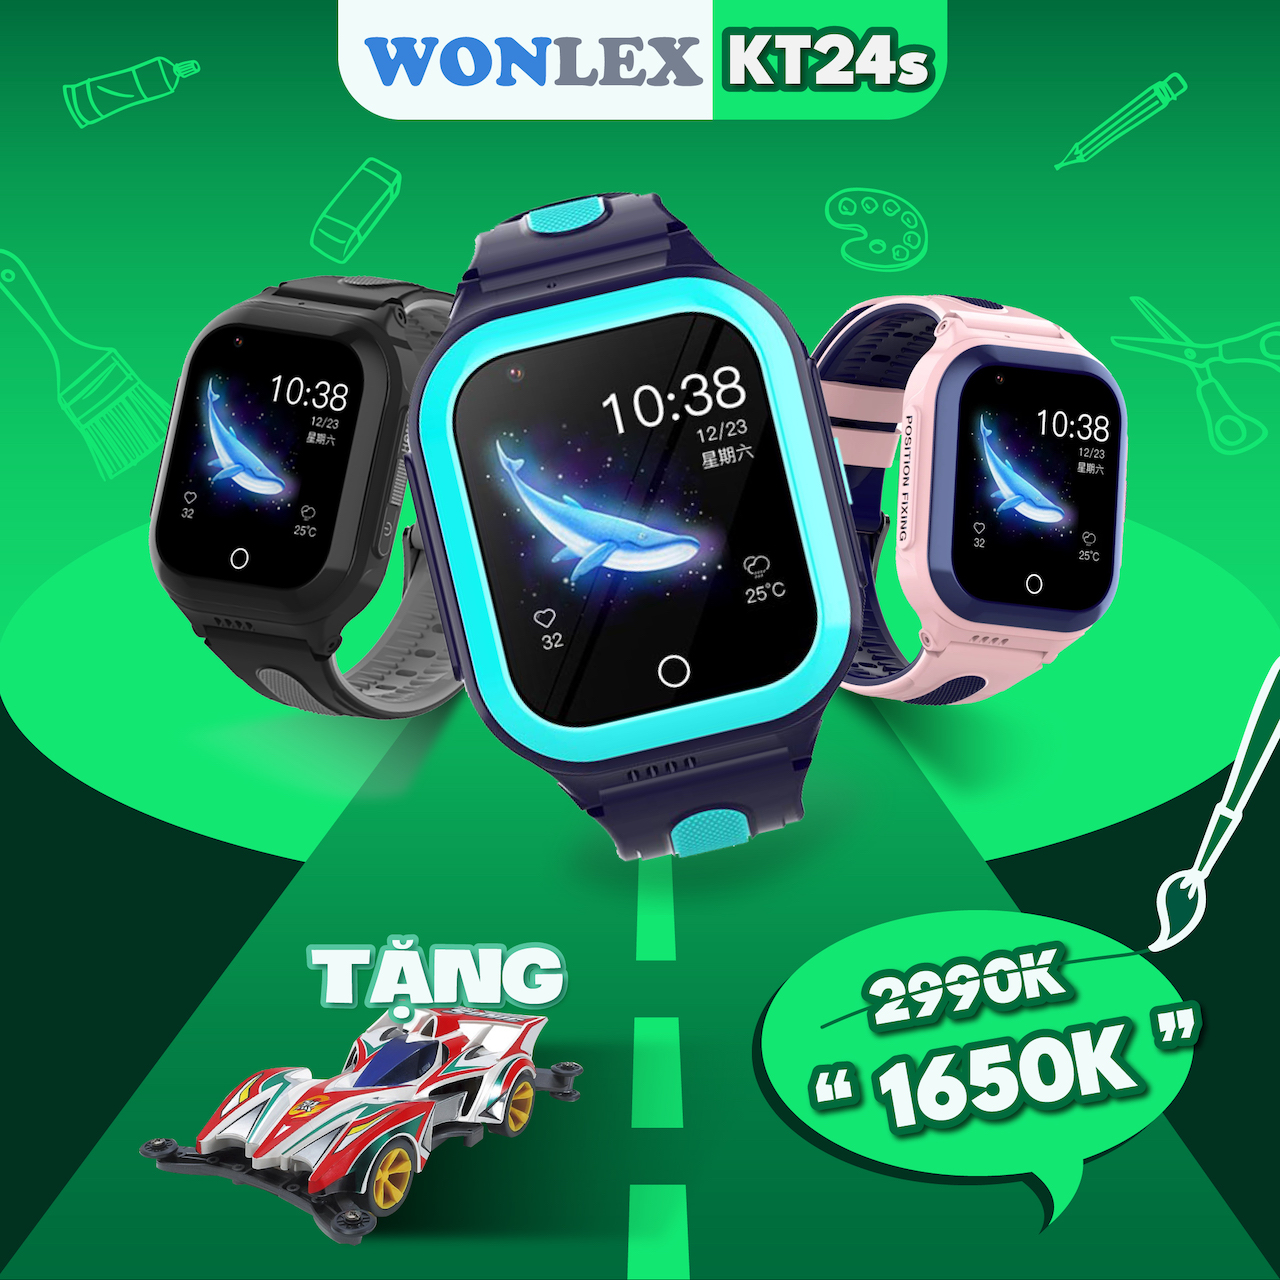 Đồng hồ định vị Wonlex KT24S